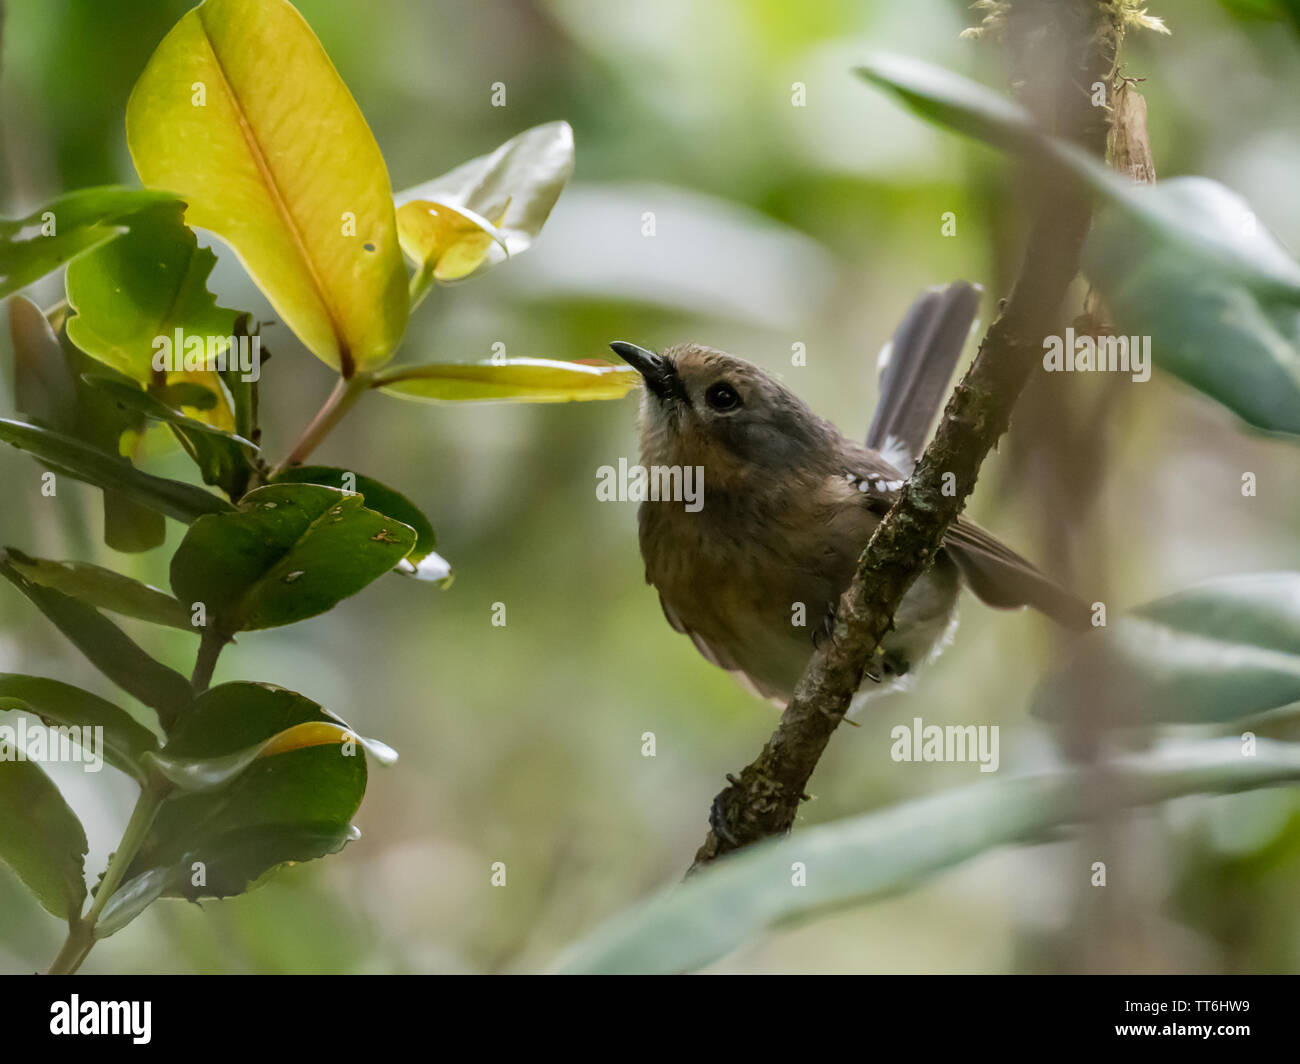 Kauai Elepaio, Chasiempis sclateri, an endemic bird to the island of Kauai Hawaii  in the Alakai Plateau Stock Photo